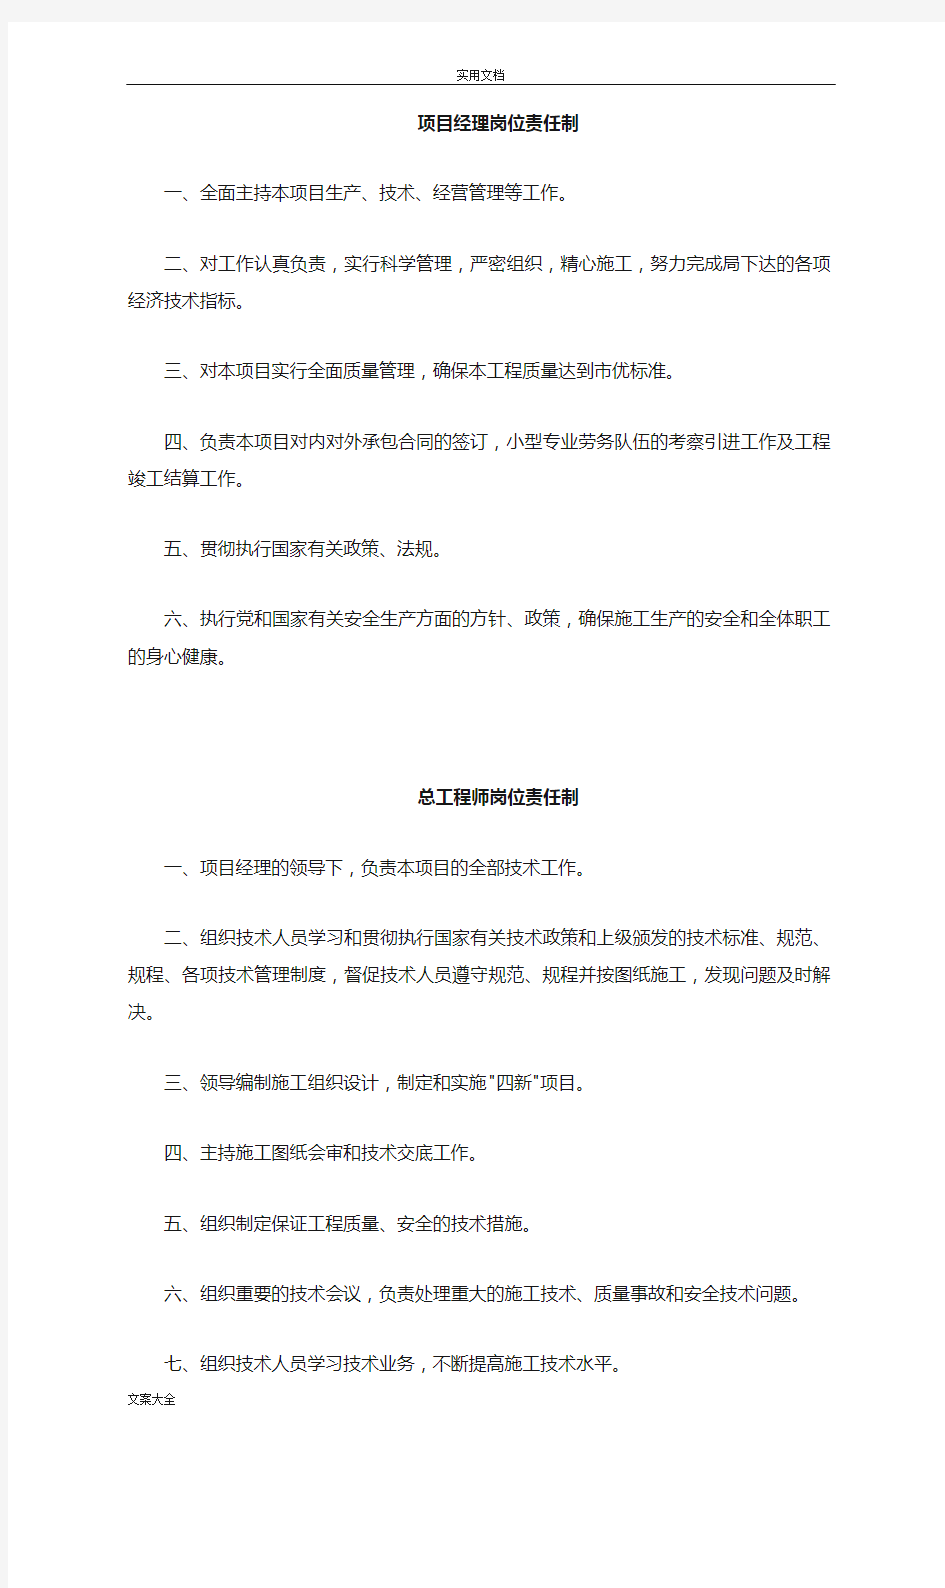 中国建筑第八工程局岗位责任制